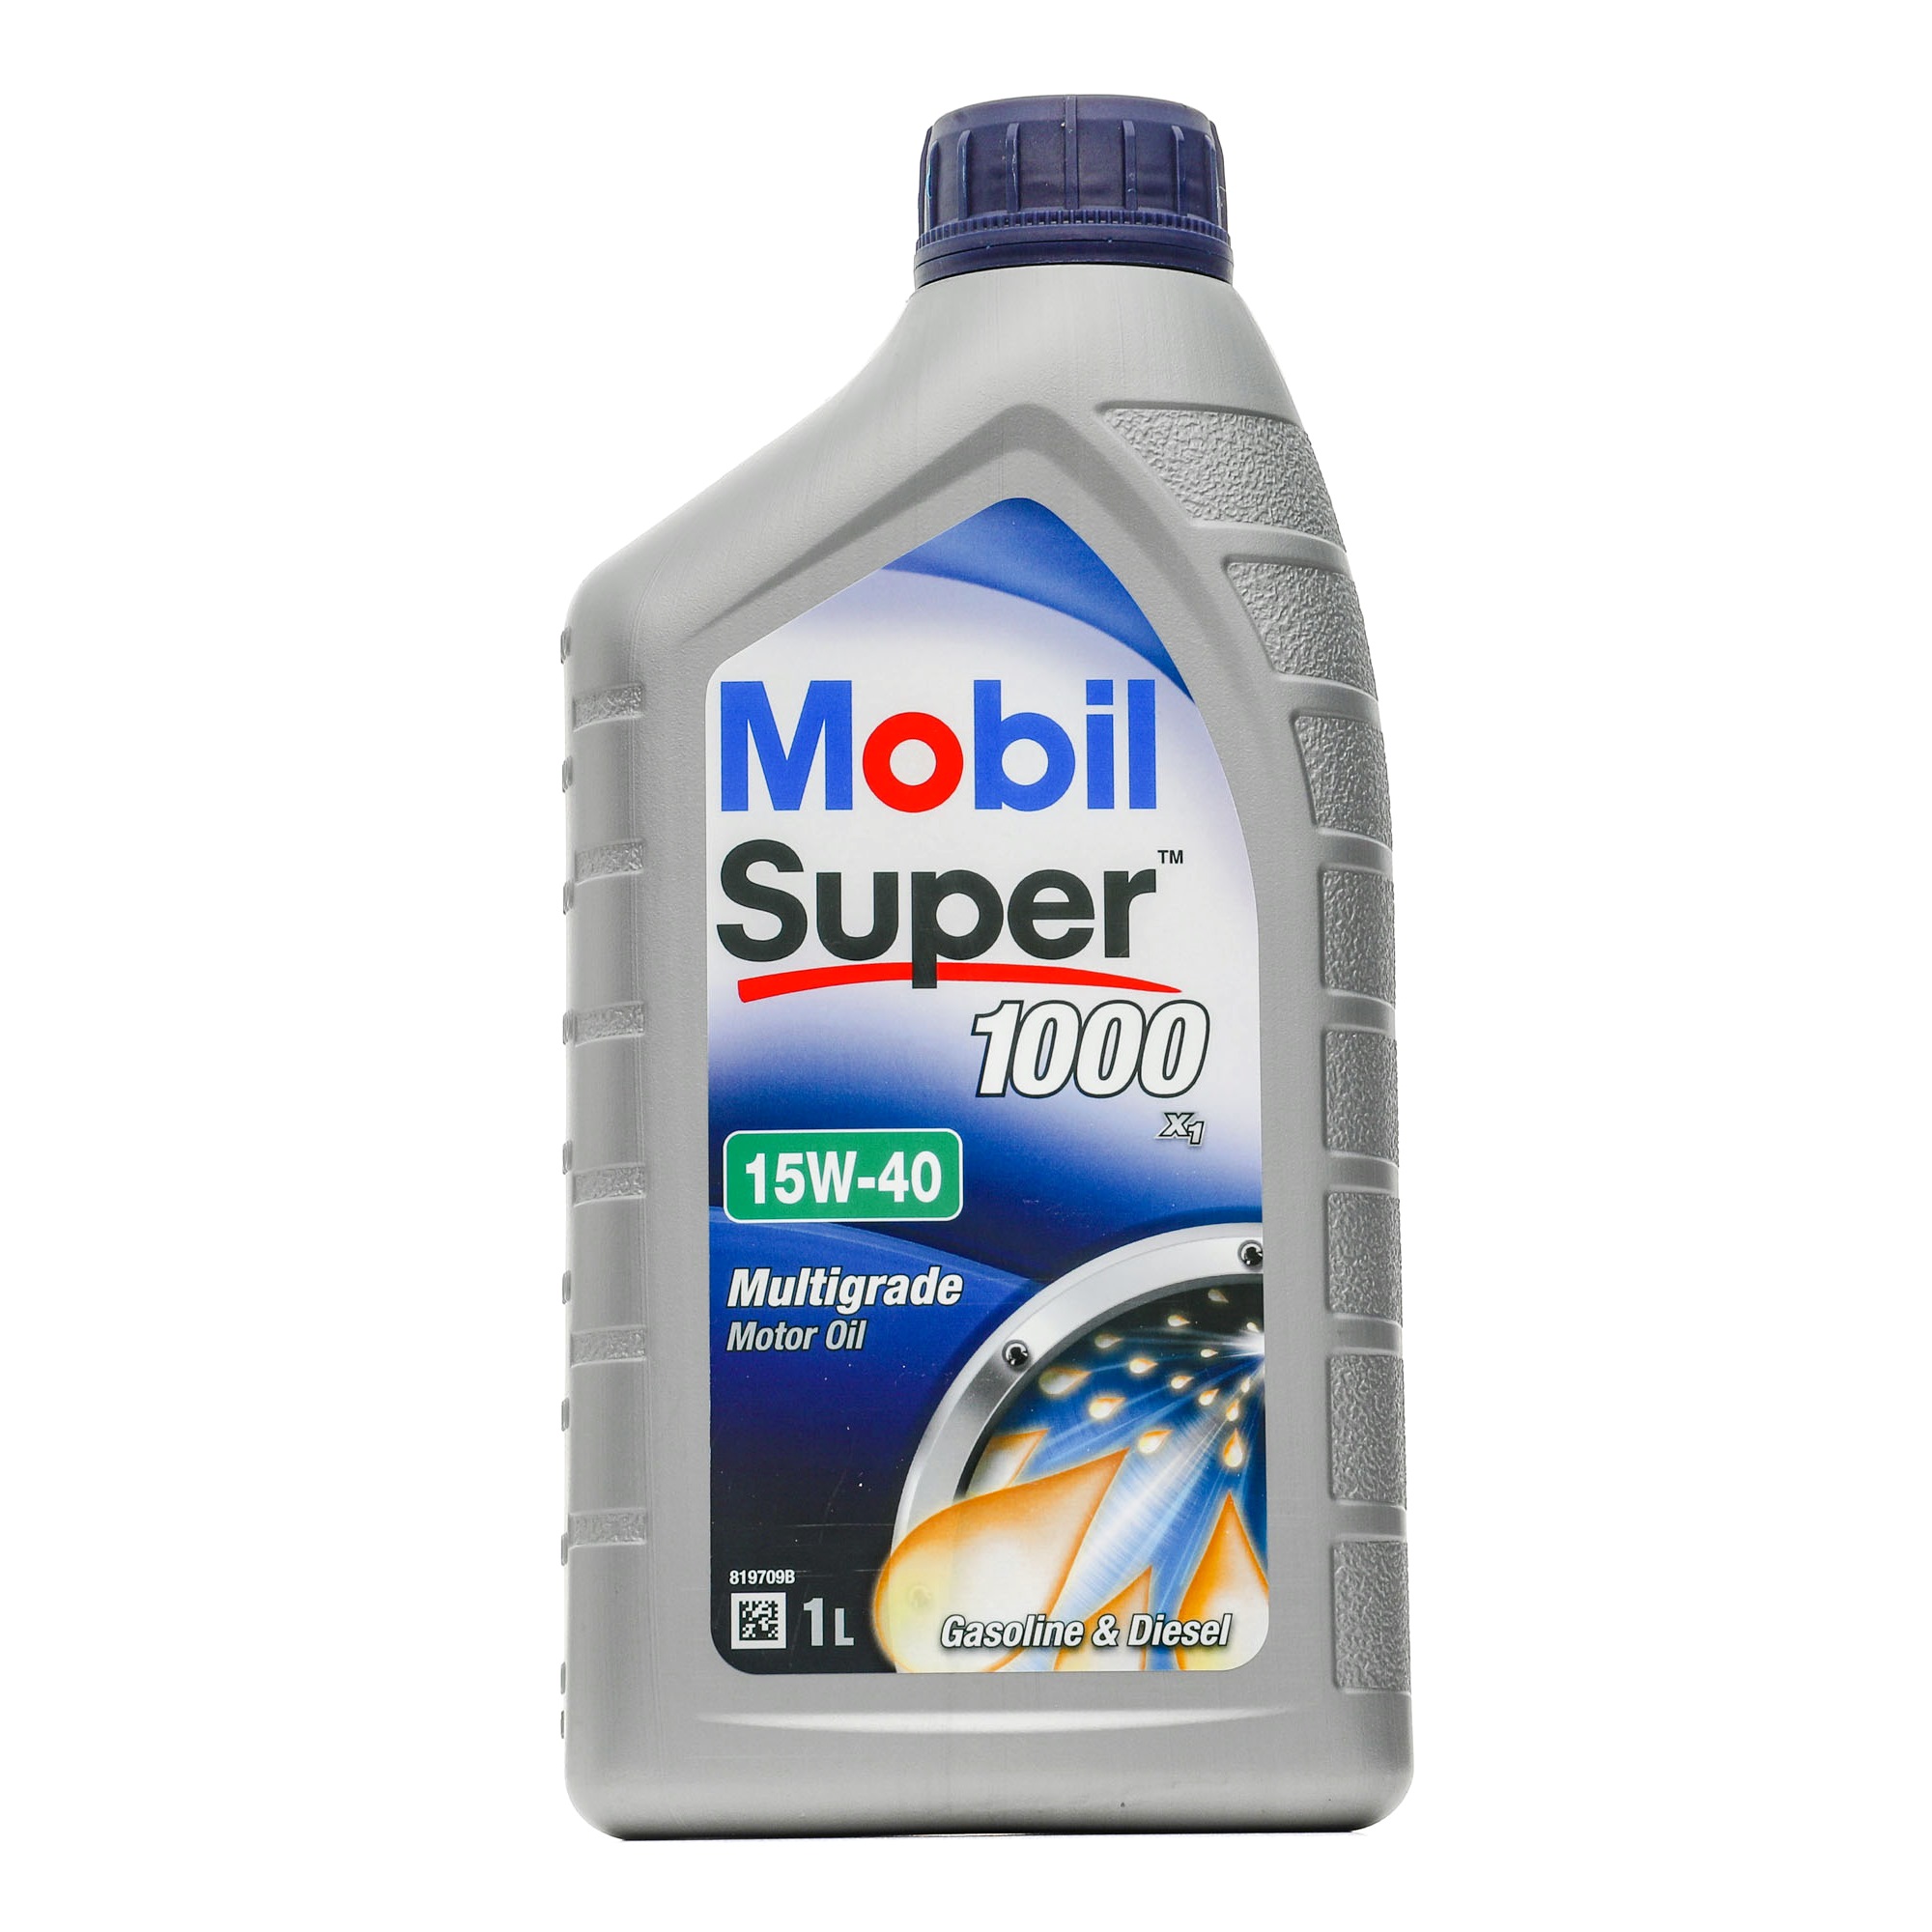 MOBIL Super, 1000 X1 150559 Engine oil 15W-40, 1l, Mineral Oil